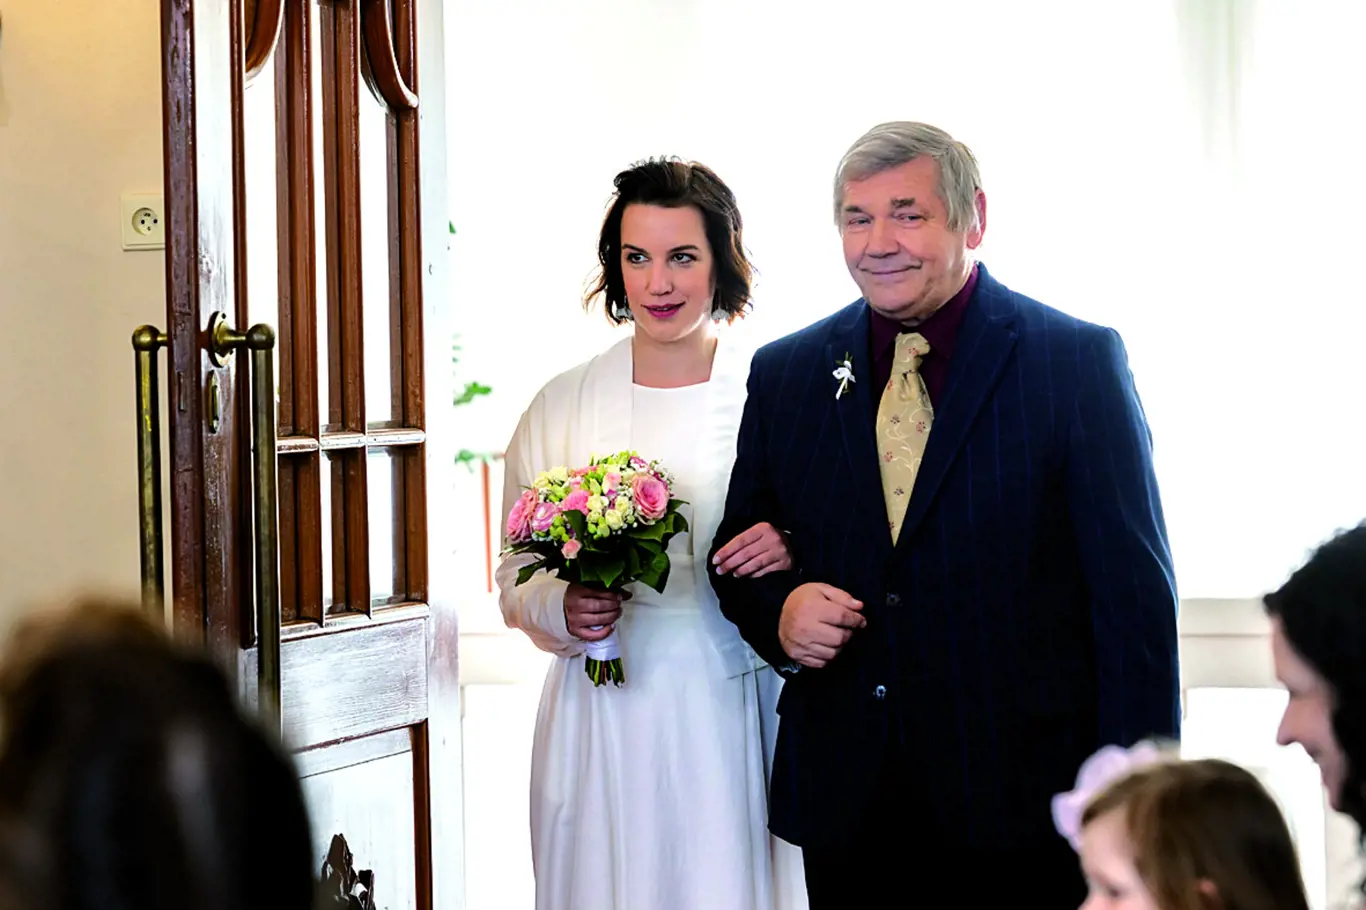 Barboru Vyskočilovou doprovodil při svatebním obřadu její vlastní otec.